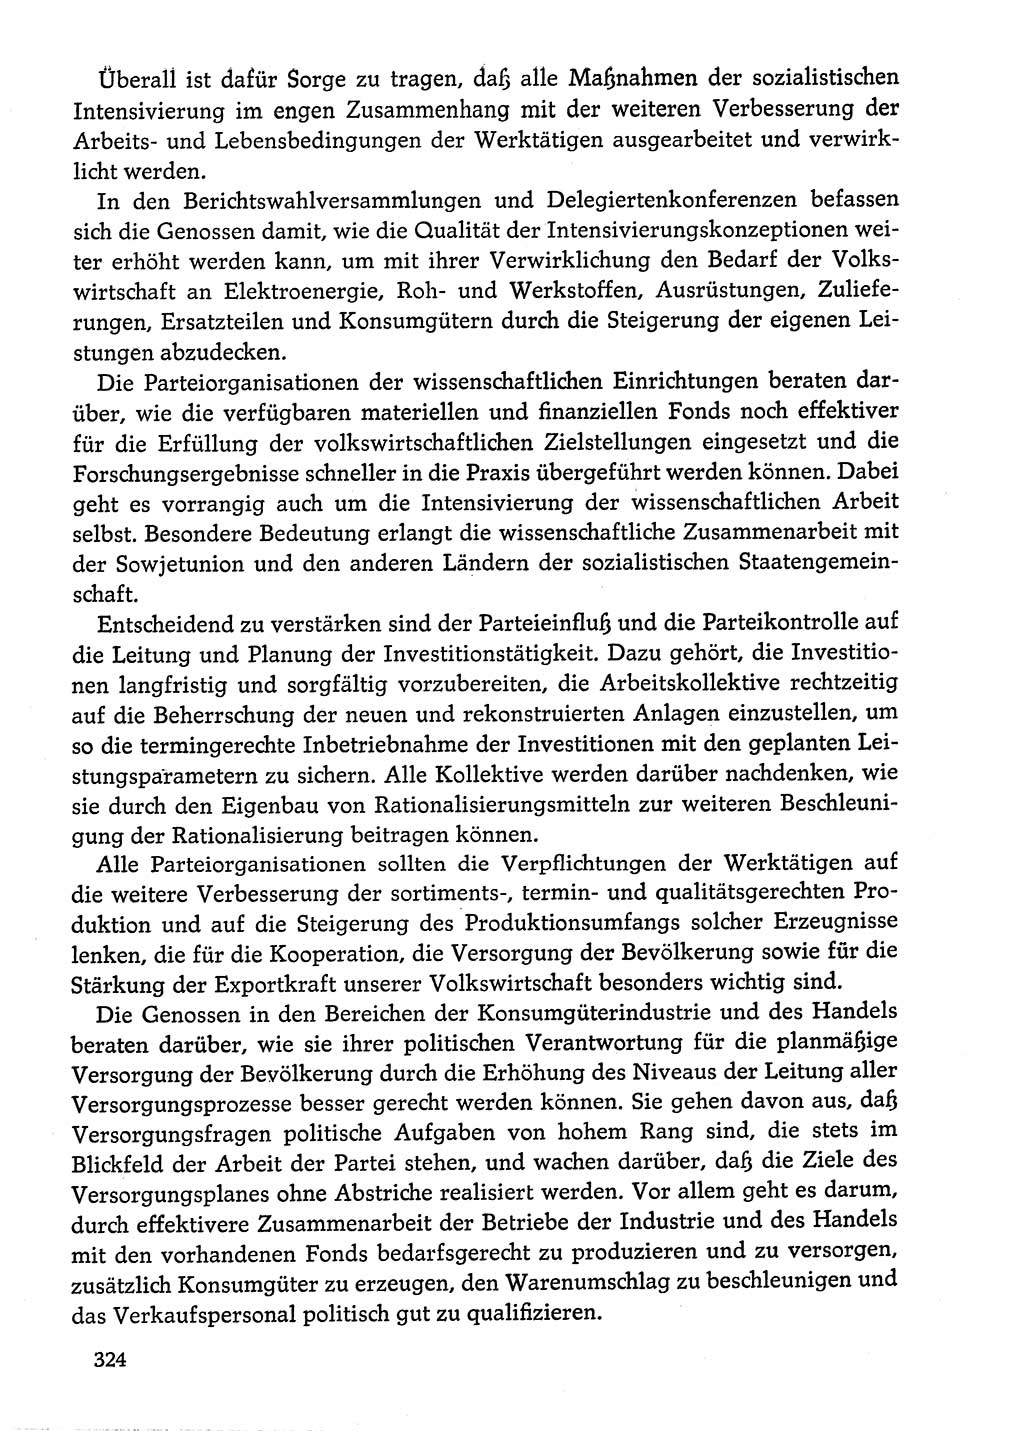 Dokumente der Sozialistischen Einheitspartei Deutschlands (SED) [Deutsche Demokratische Republik (DDR)] 1974-1975, Seite 324 (Dok. SED DDR 1978, Bd. ⅩⅤ, S. 324)